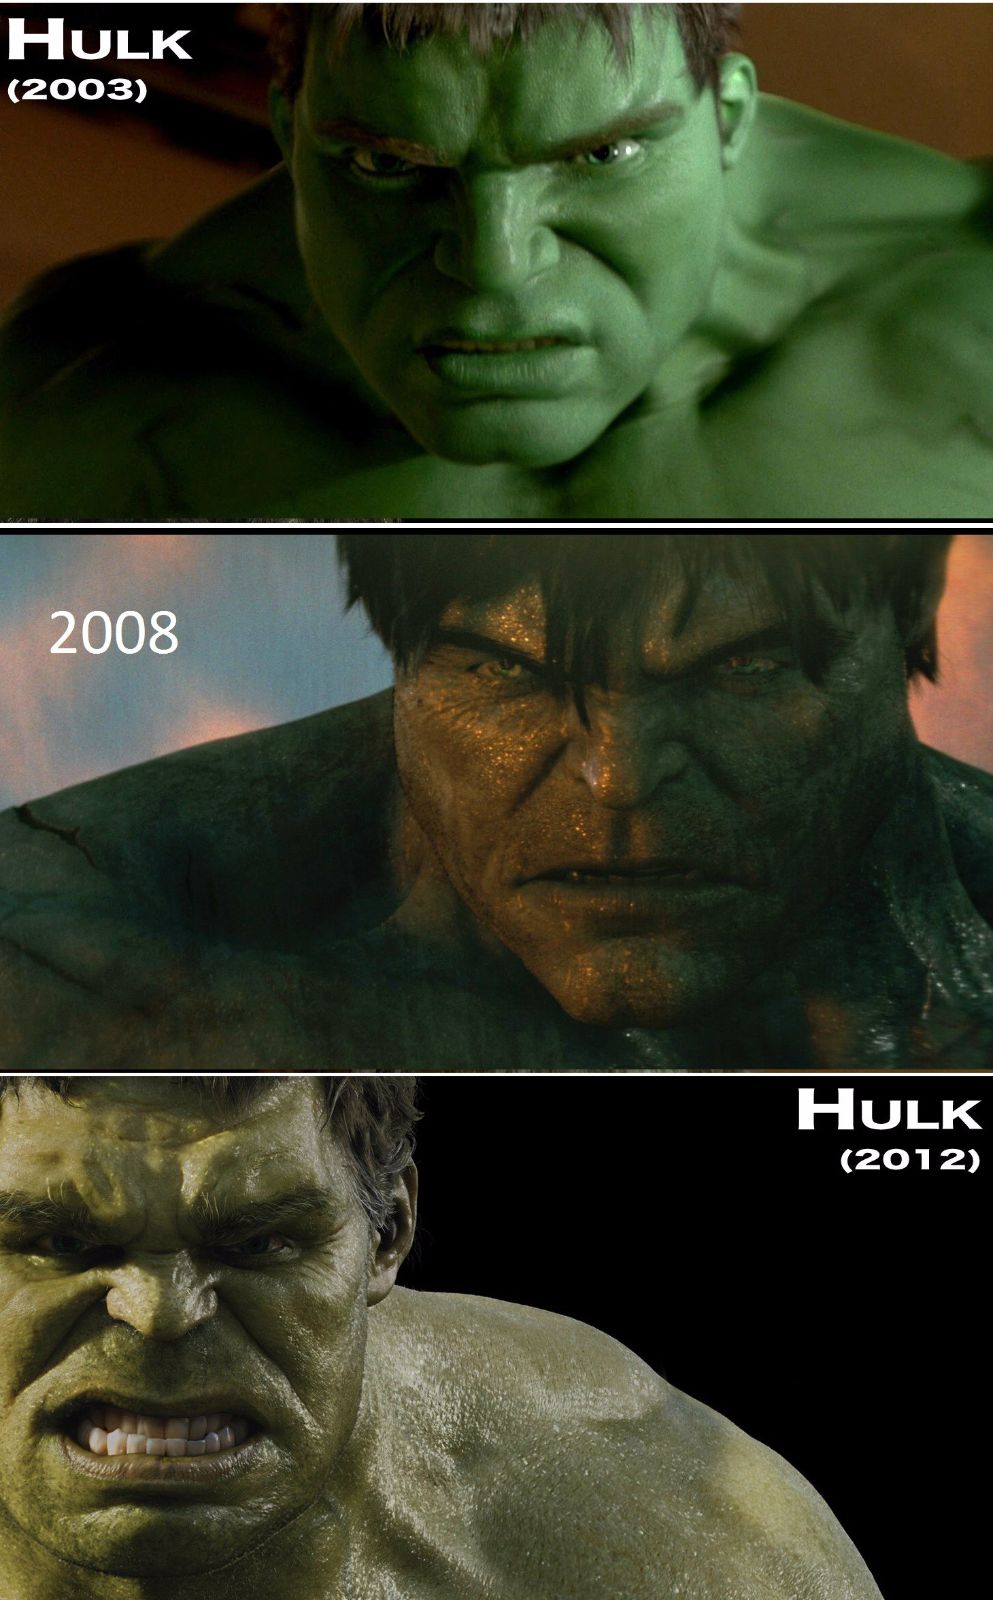 (จบในคลิปเดียว) รวมวิวัฒนาการ หน้าตา+รูปร่าง ยักษ์เขียว The Hulk แห่ง Marvel